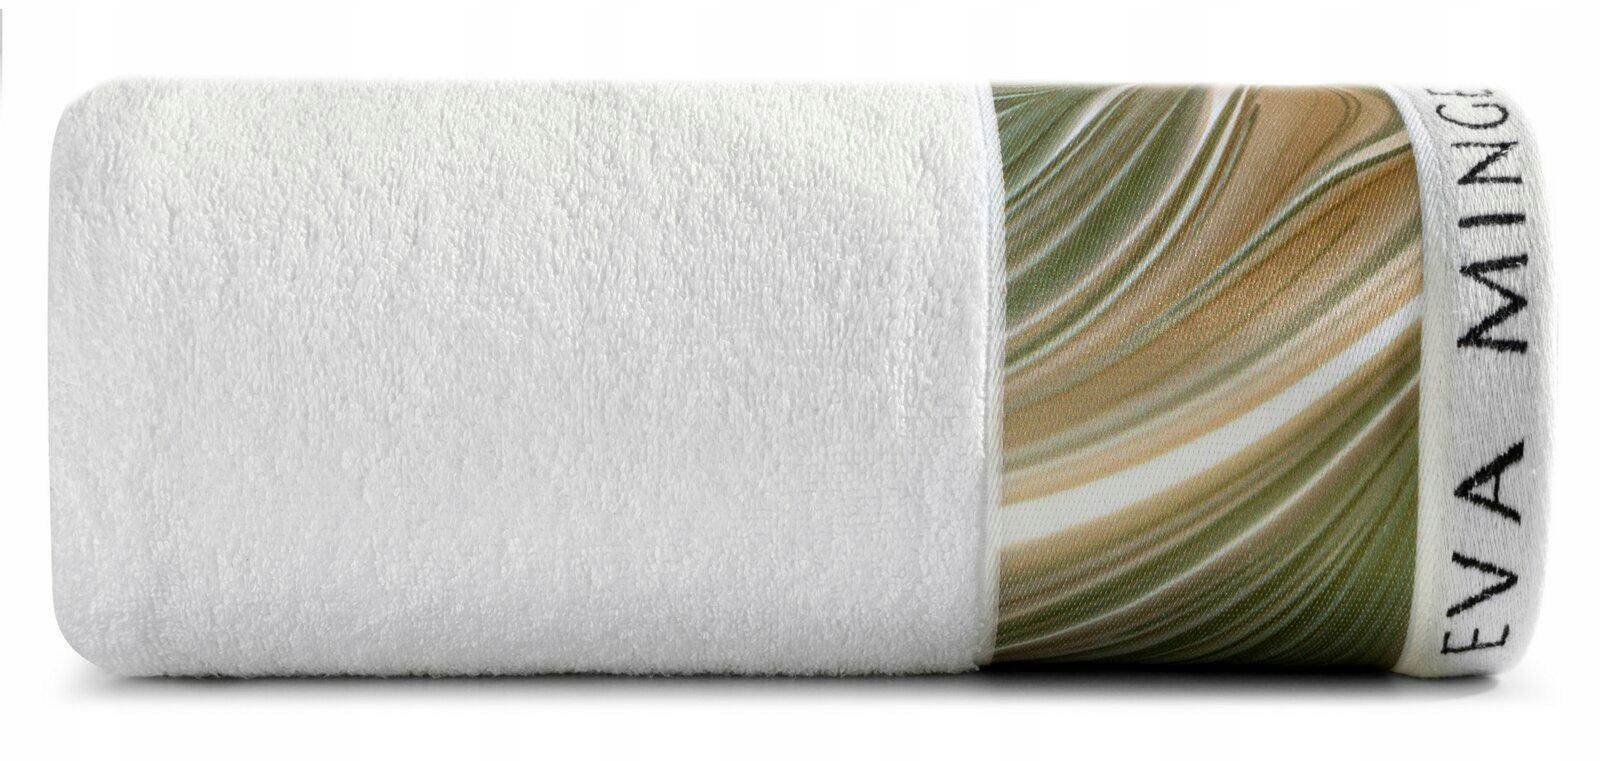 Ręcznik Sophia 70x140 biały zielony Ewa Minge 485g